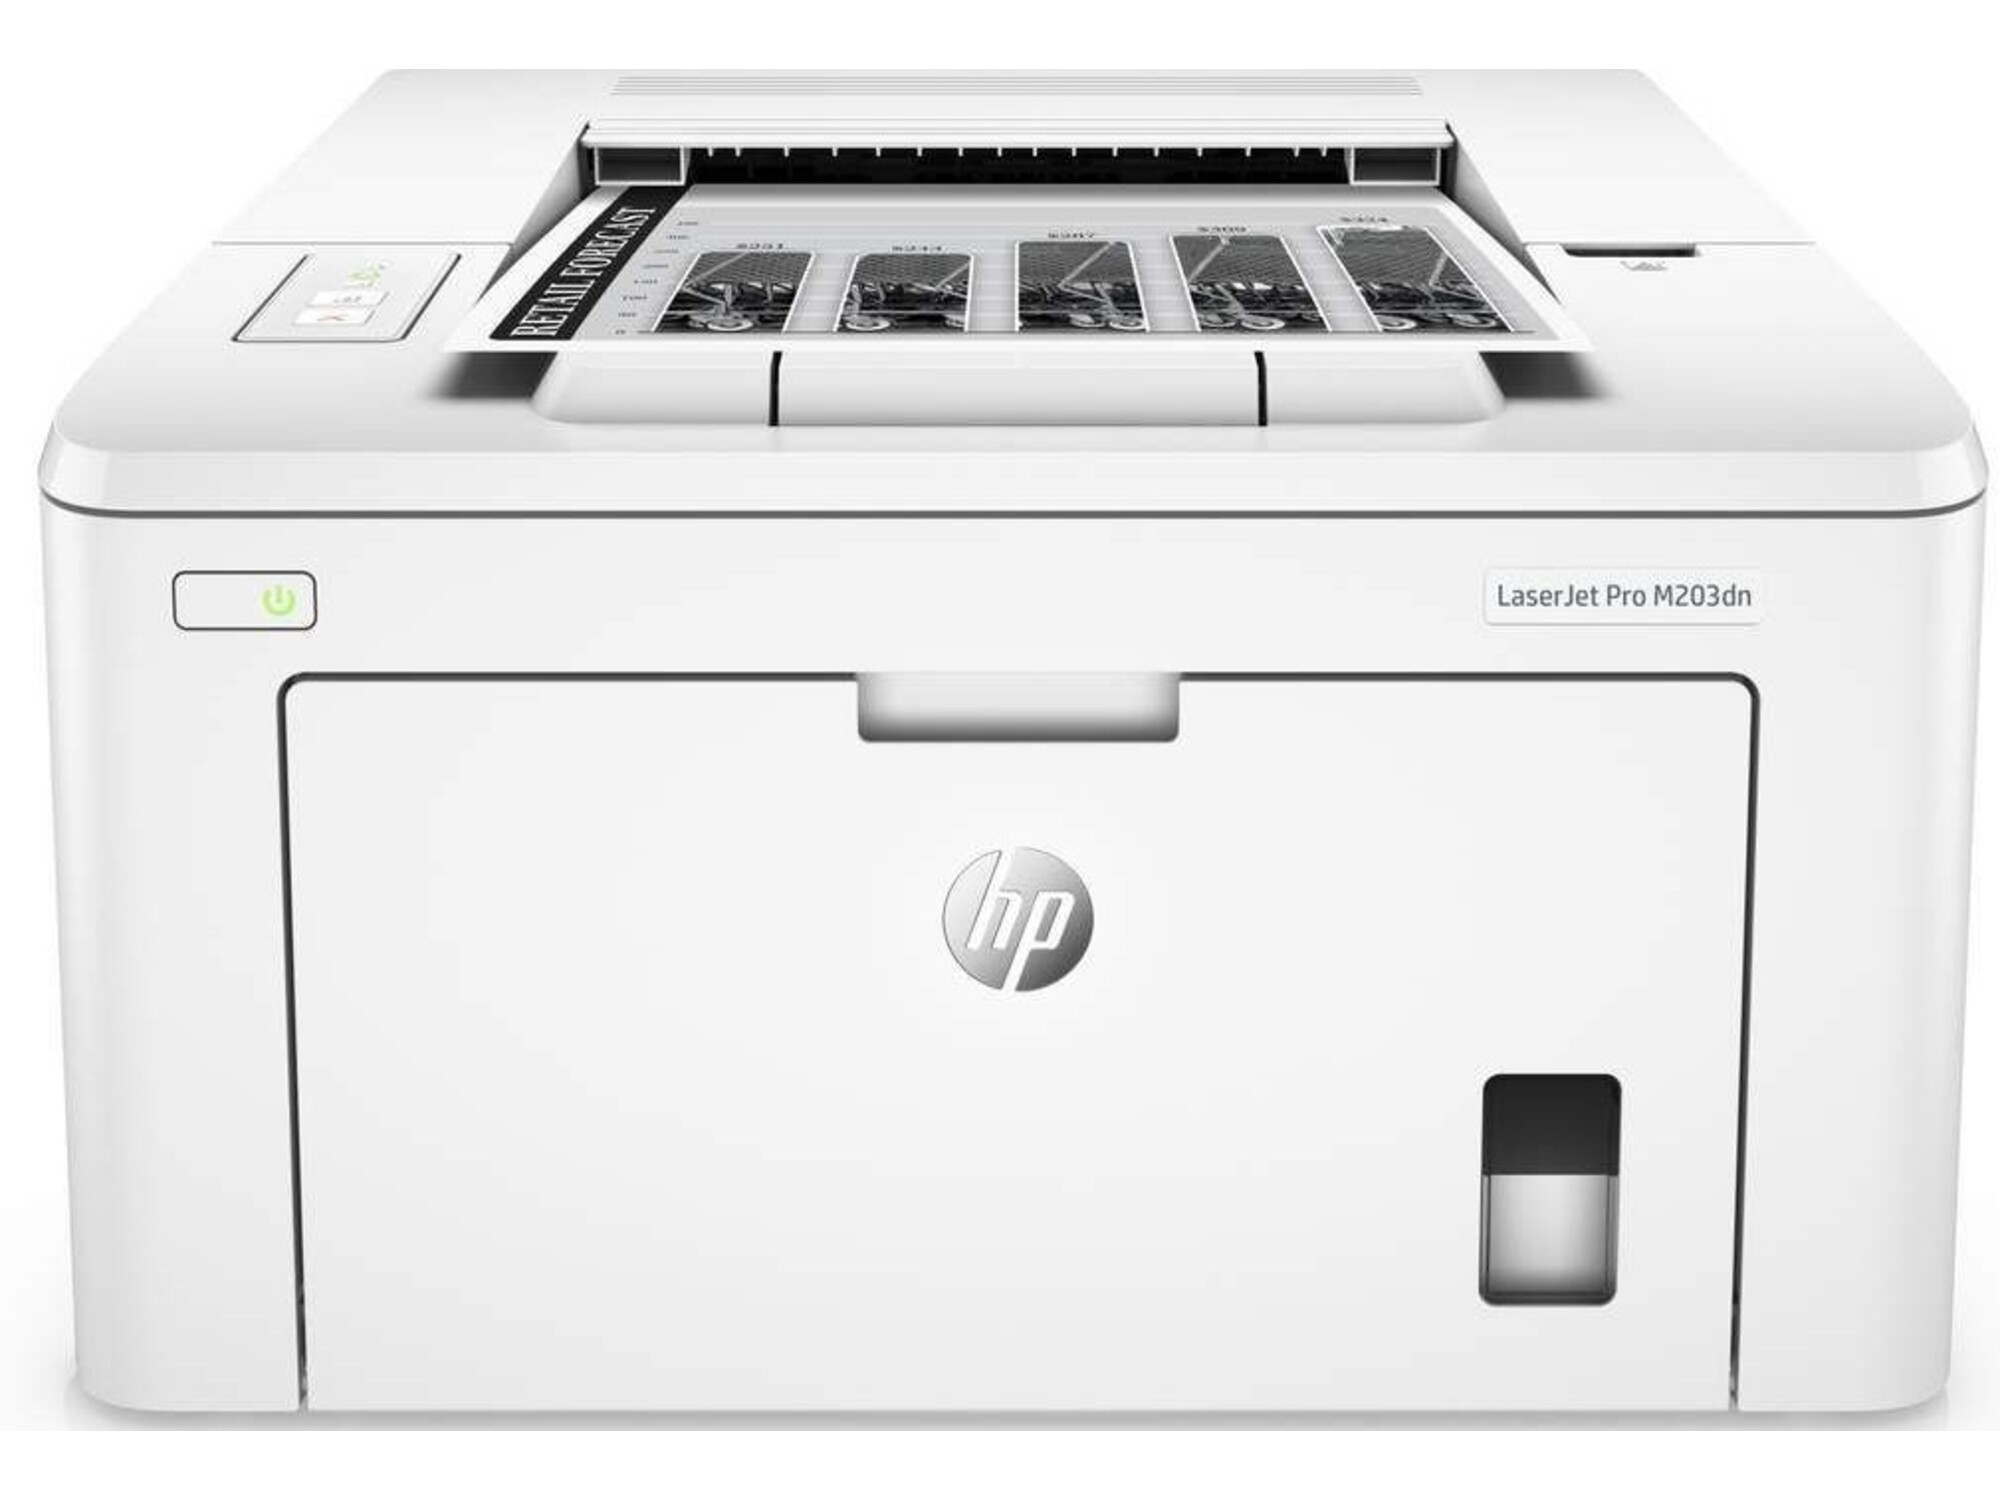 HP črno-beli laserski tiskalnik Laser Jet M203dn (G3Q46A#B19)